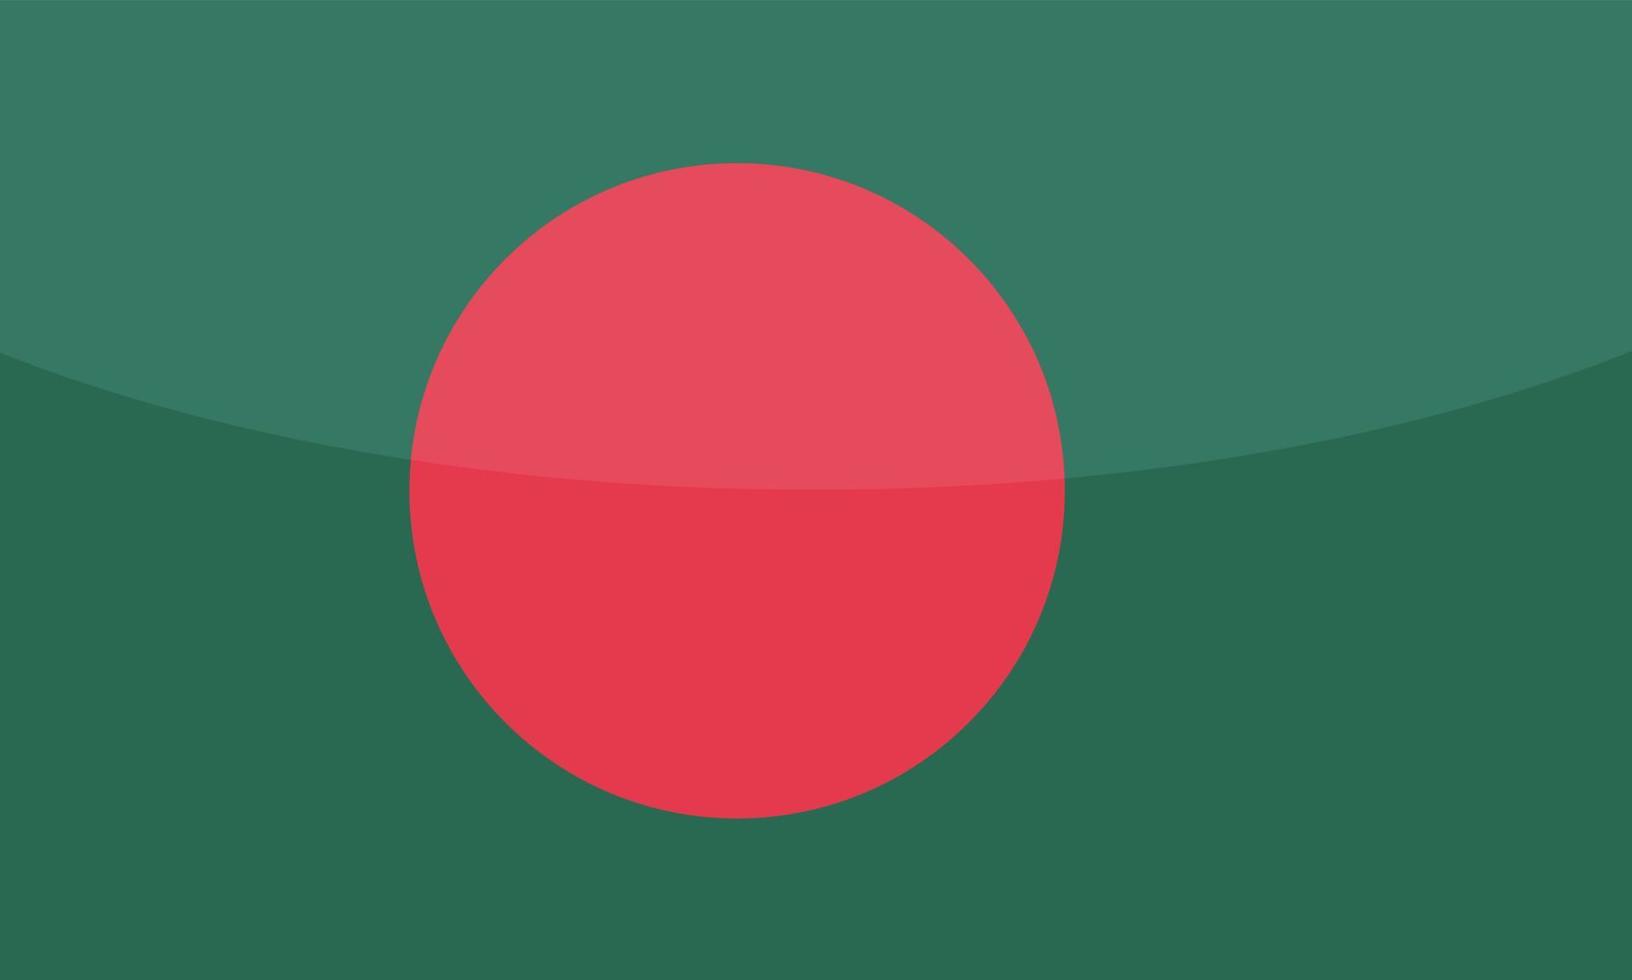 bandera dibujada a mano de bangladesh, taka de bangladesh dibujado a mano vector